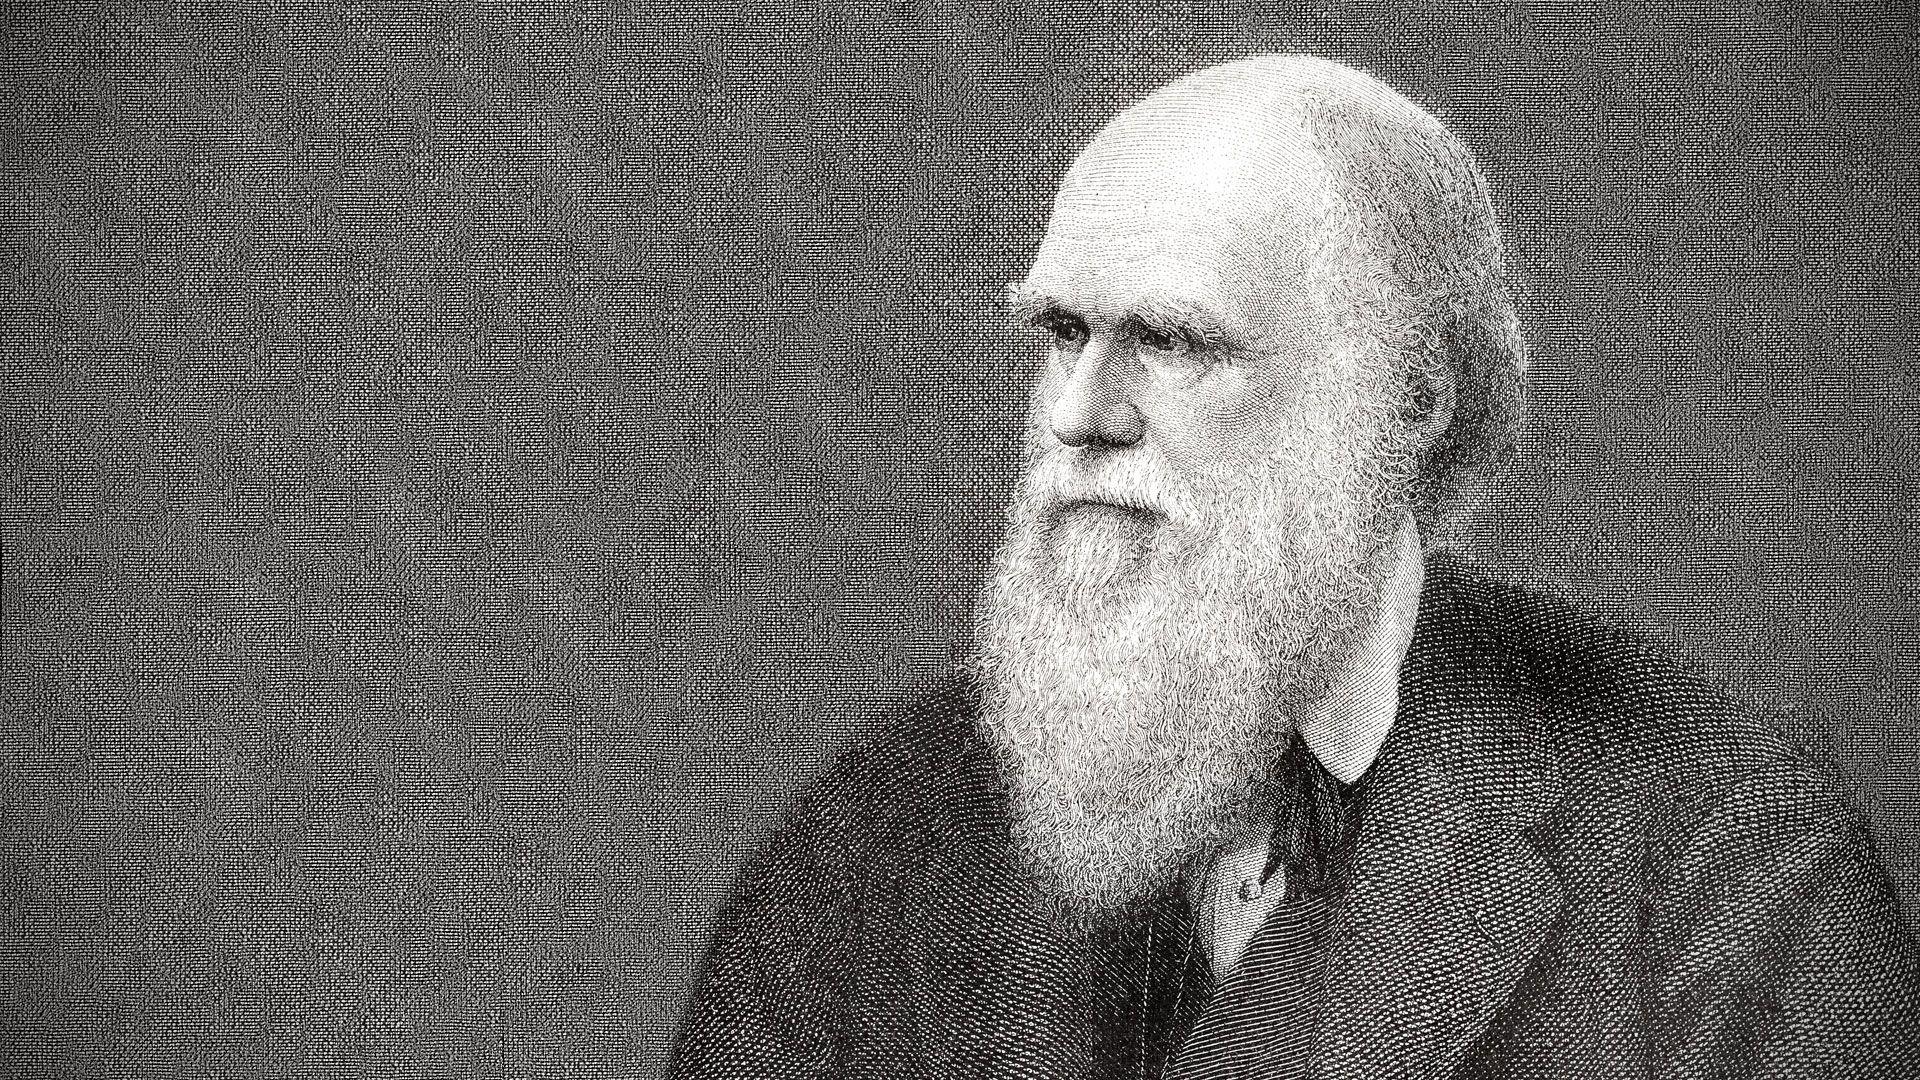 دانلود عکس پی ان جی چارلز داروین Charles Darwin با بالاترین کیفیت 